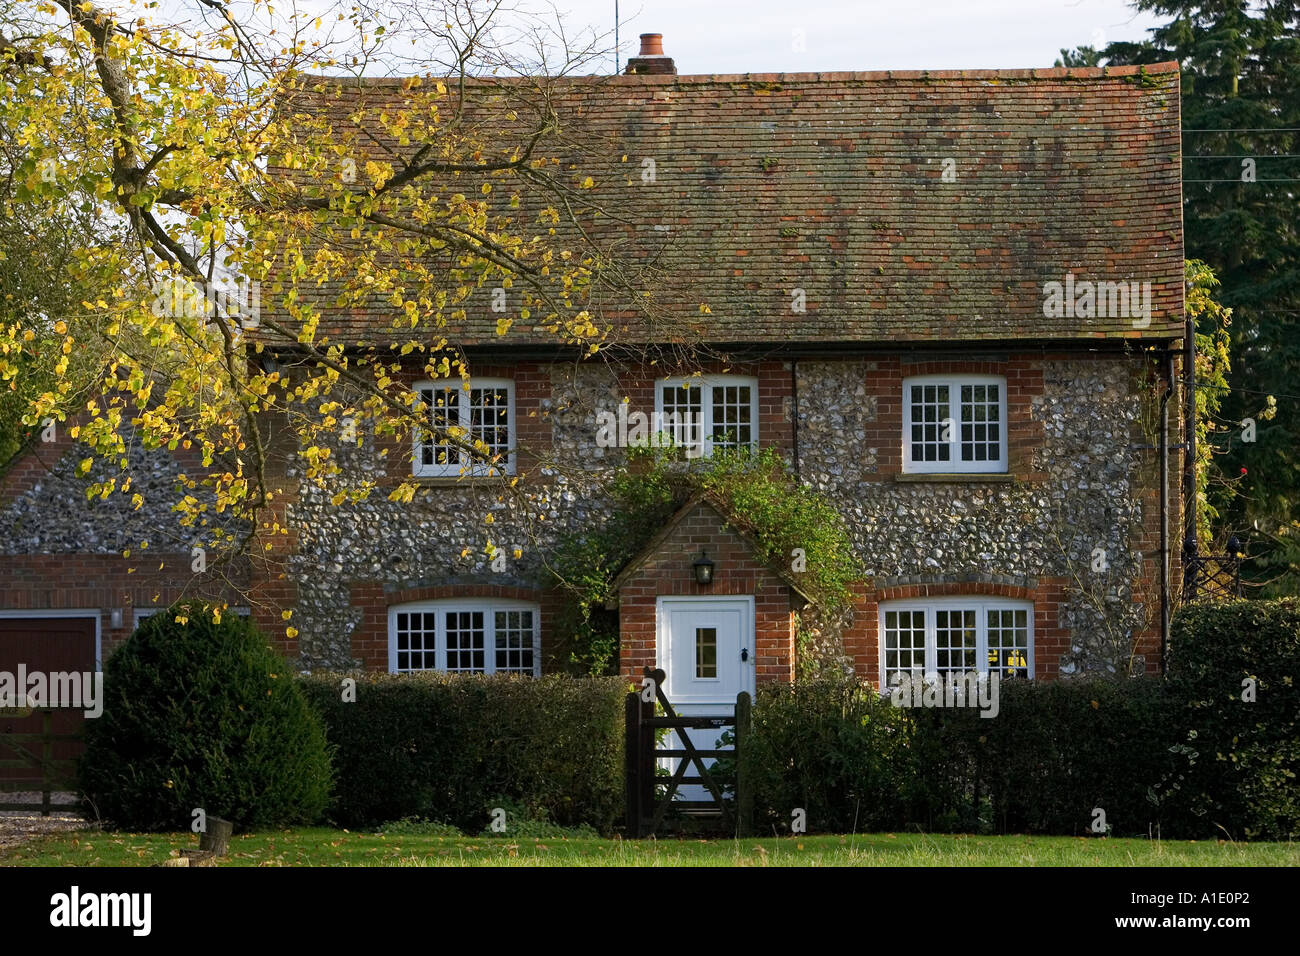 Briques et silex anglais traditionnel chalet à la Chilterns Oxfordshire Royaume-Uni Banque D'Images